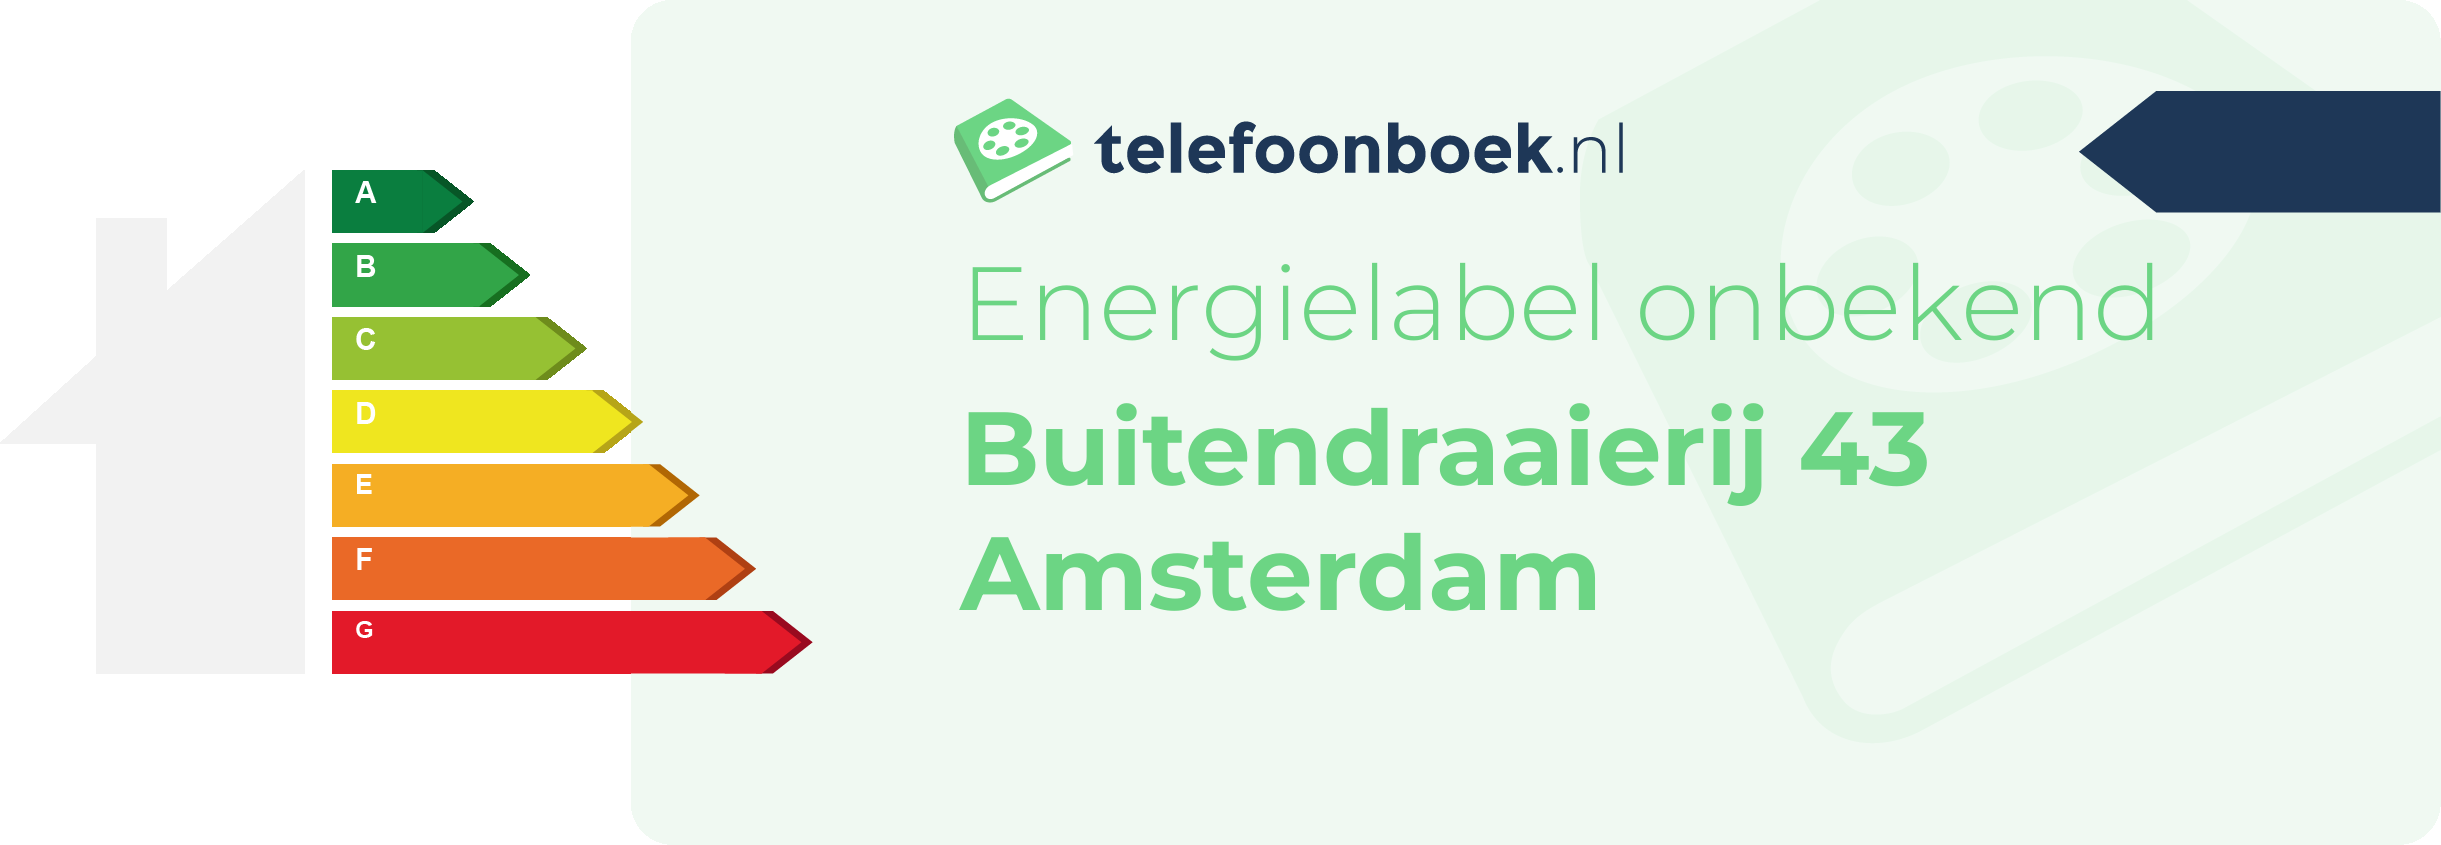 Energielabel Buitendraaierij 43 Amsterdam